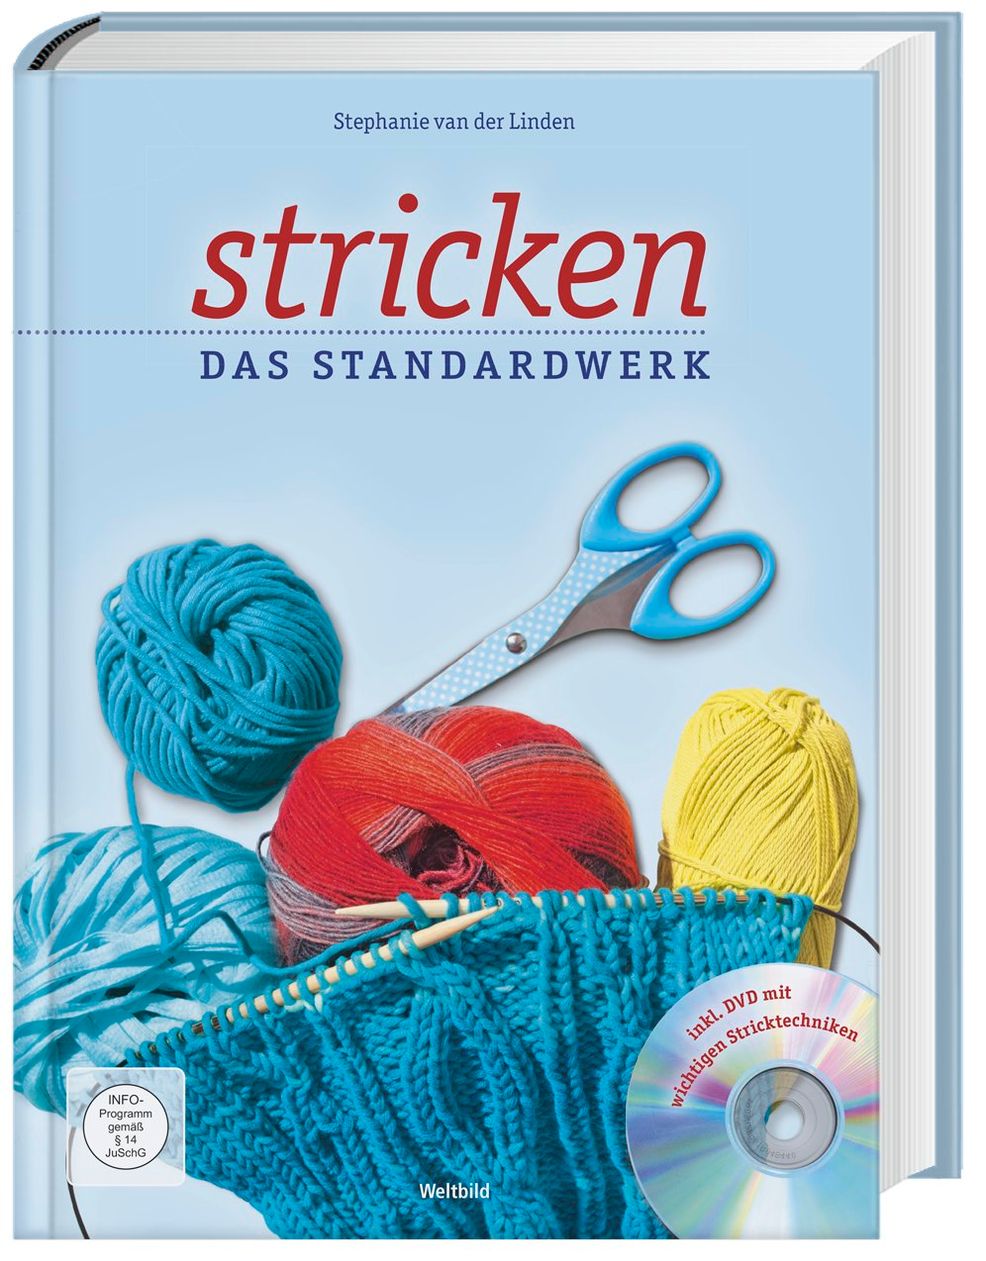 Stricken - Das Standardwerk mit DVD Weltbild-Ausgabe versandkostenfrei